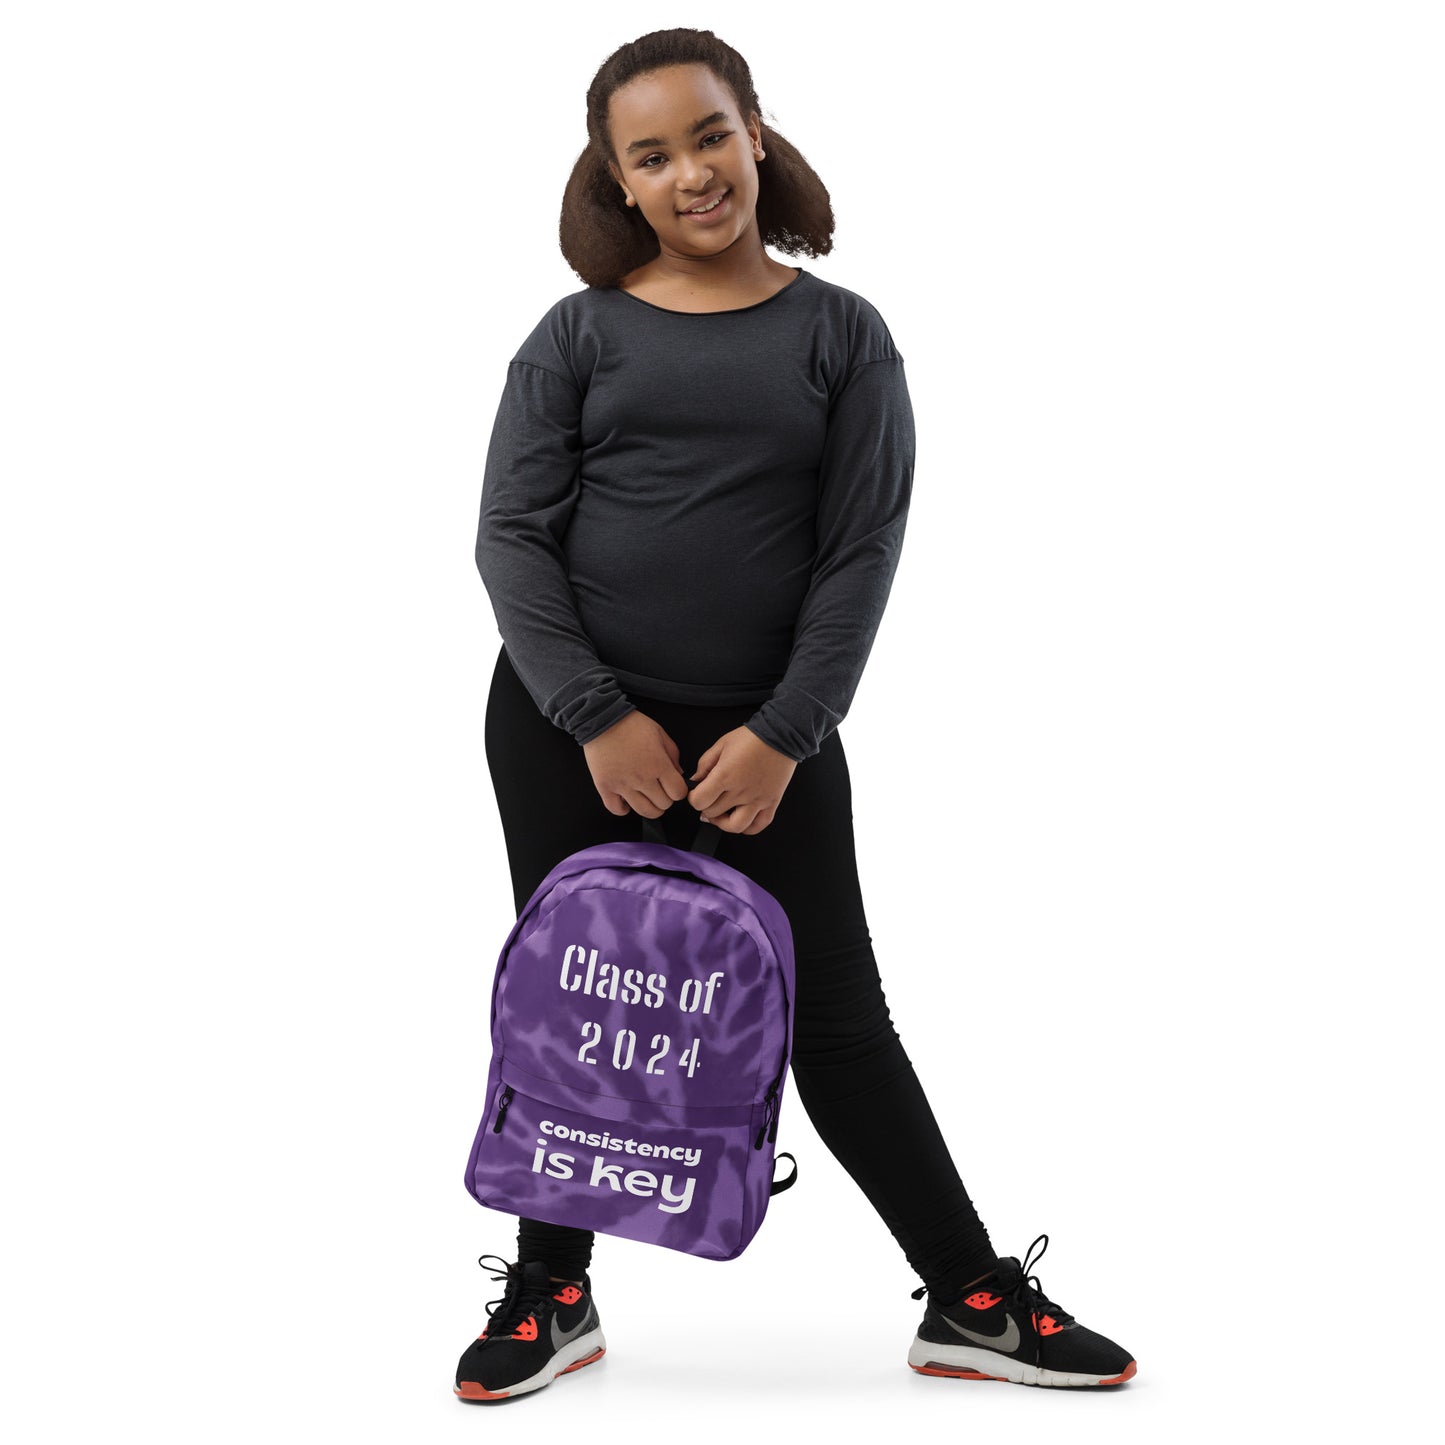 C/o 2024 Backpack (Purple)